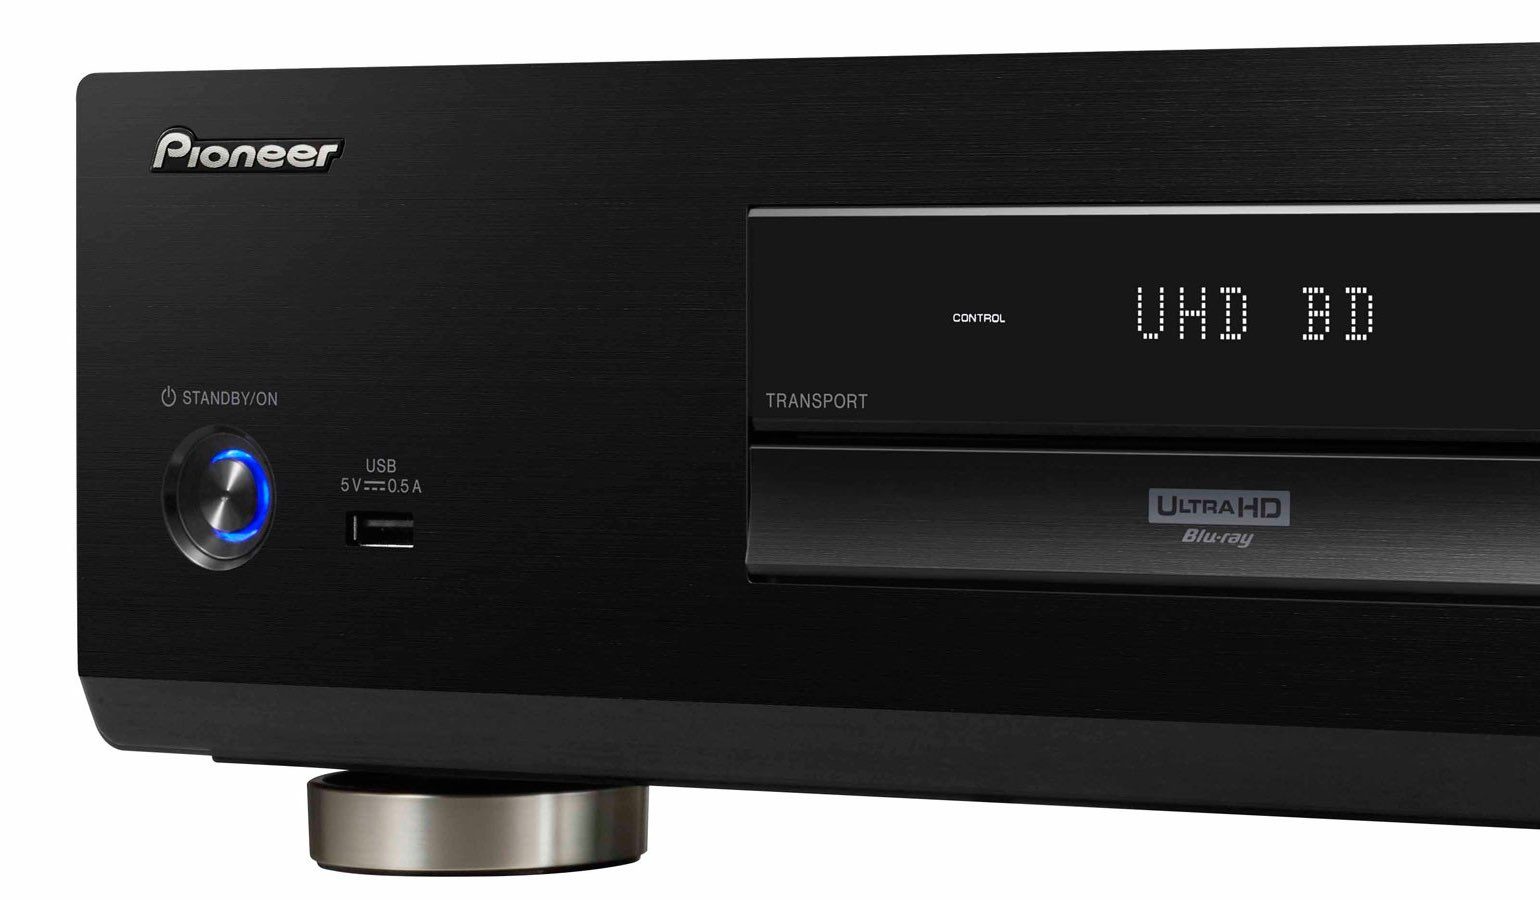 Kwijting Omgeving Uiterlijk Review: Pioneer UDP-LX500 Ultra HD Blu-ray speler | FWD